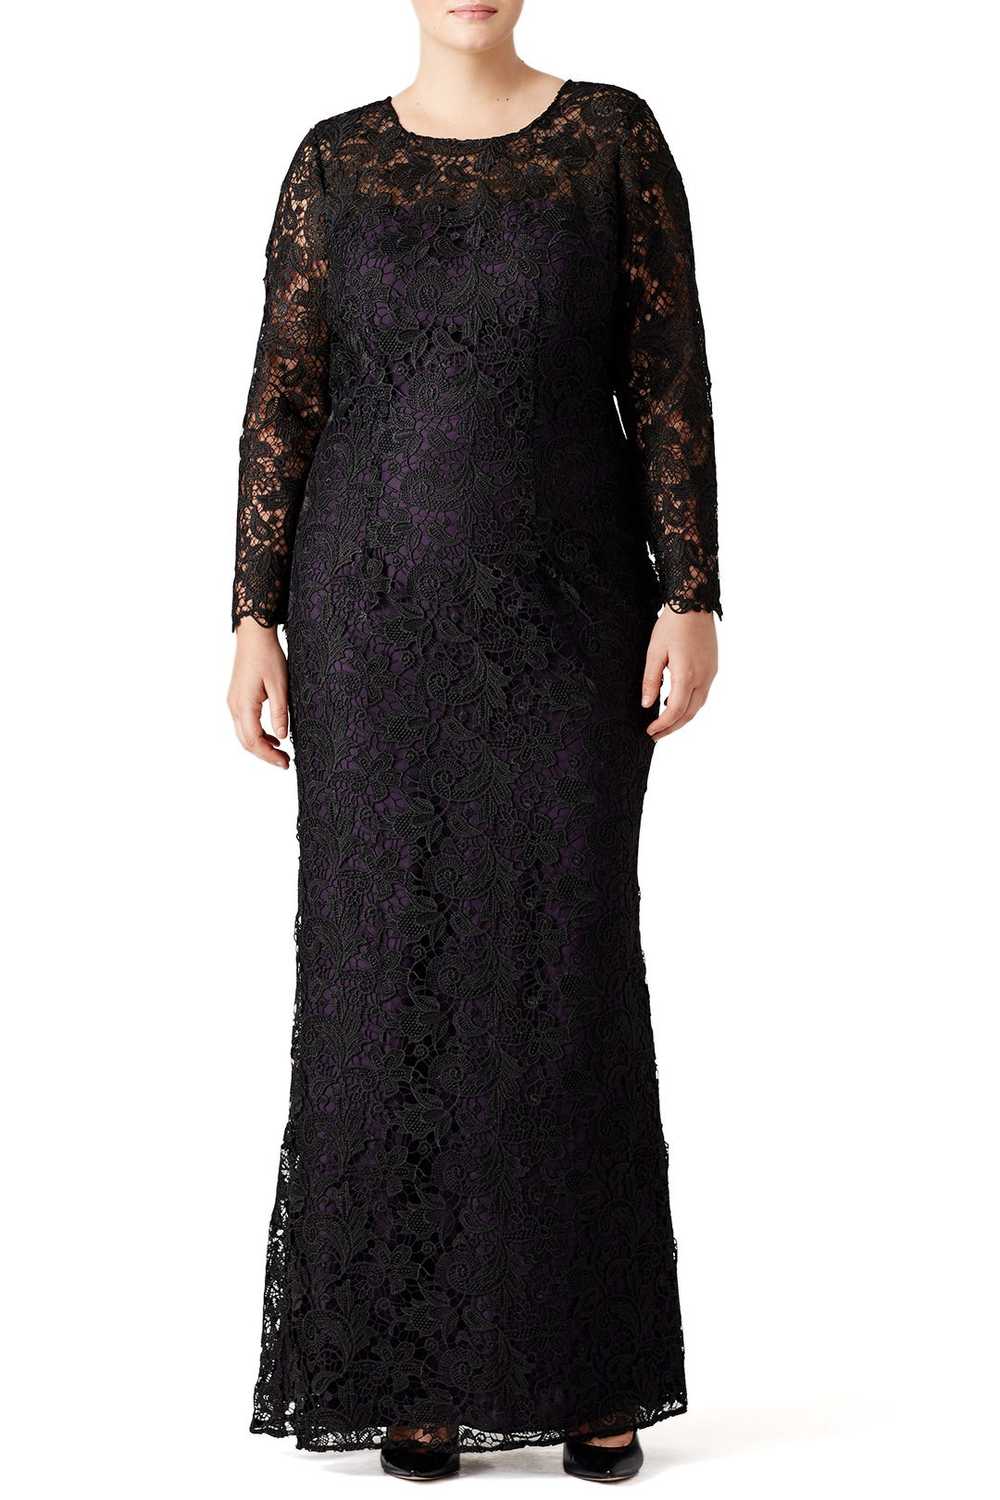 ML Monique Lhuillier Black Lace Tower Gown - image 3